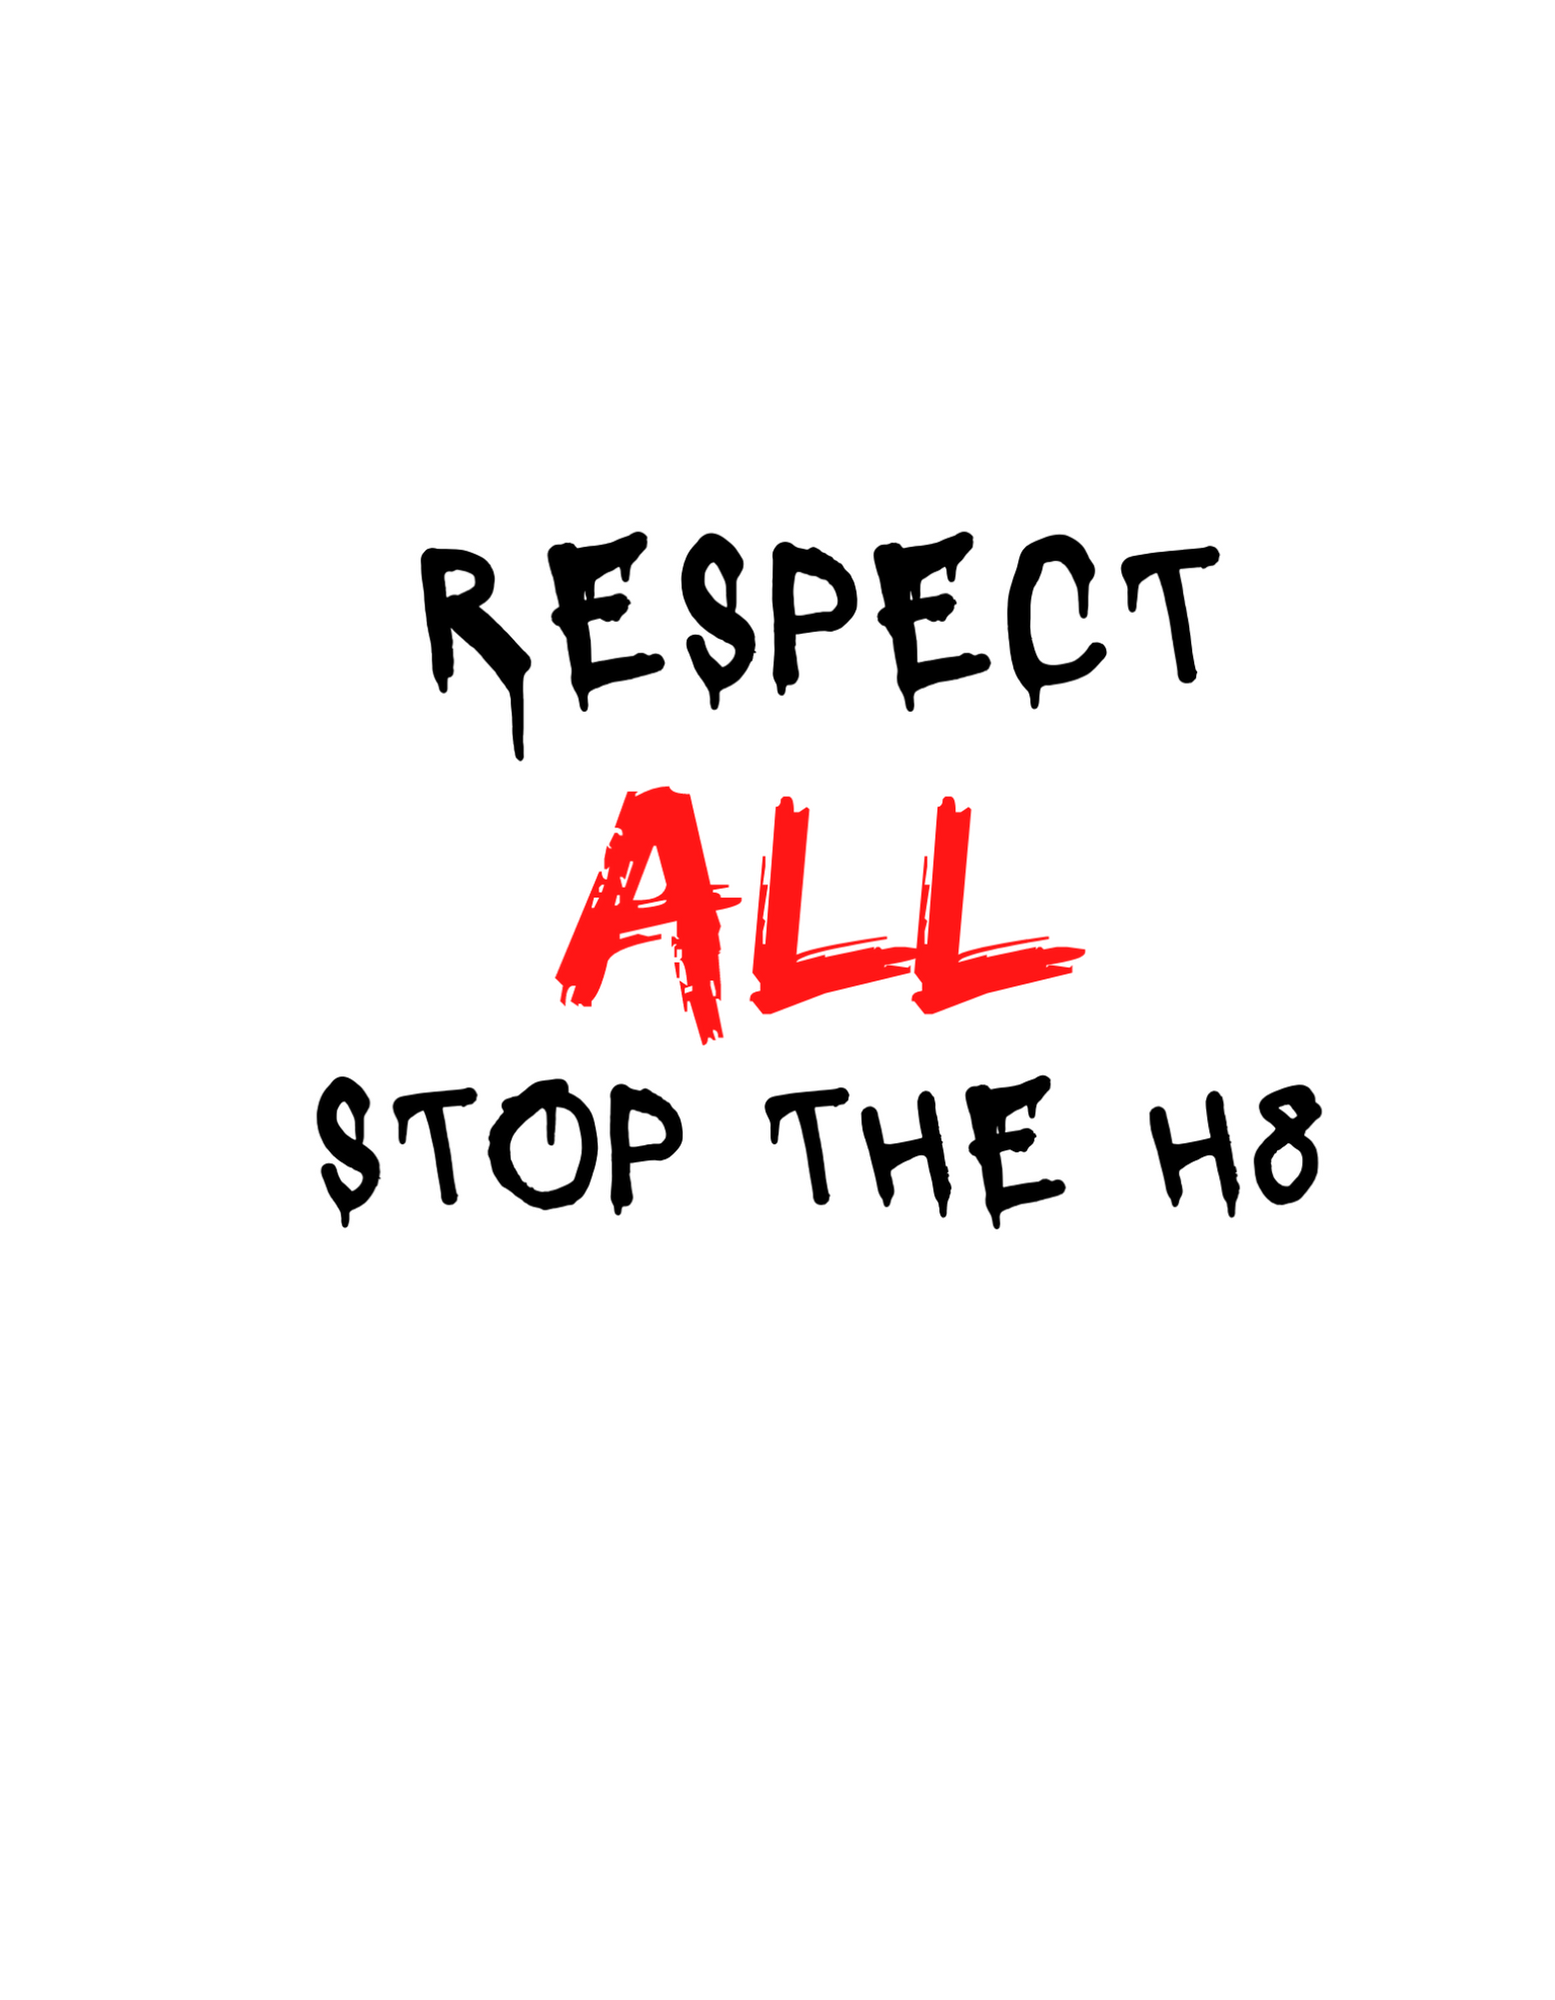 Respect All Stop The 8  Klistermärke